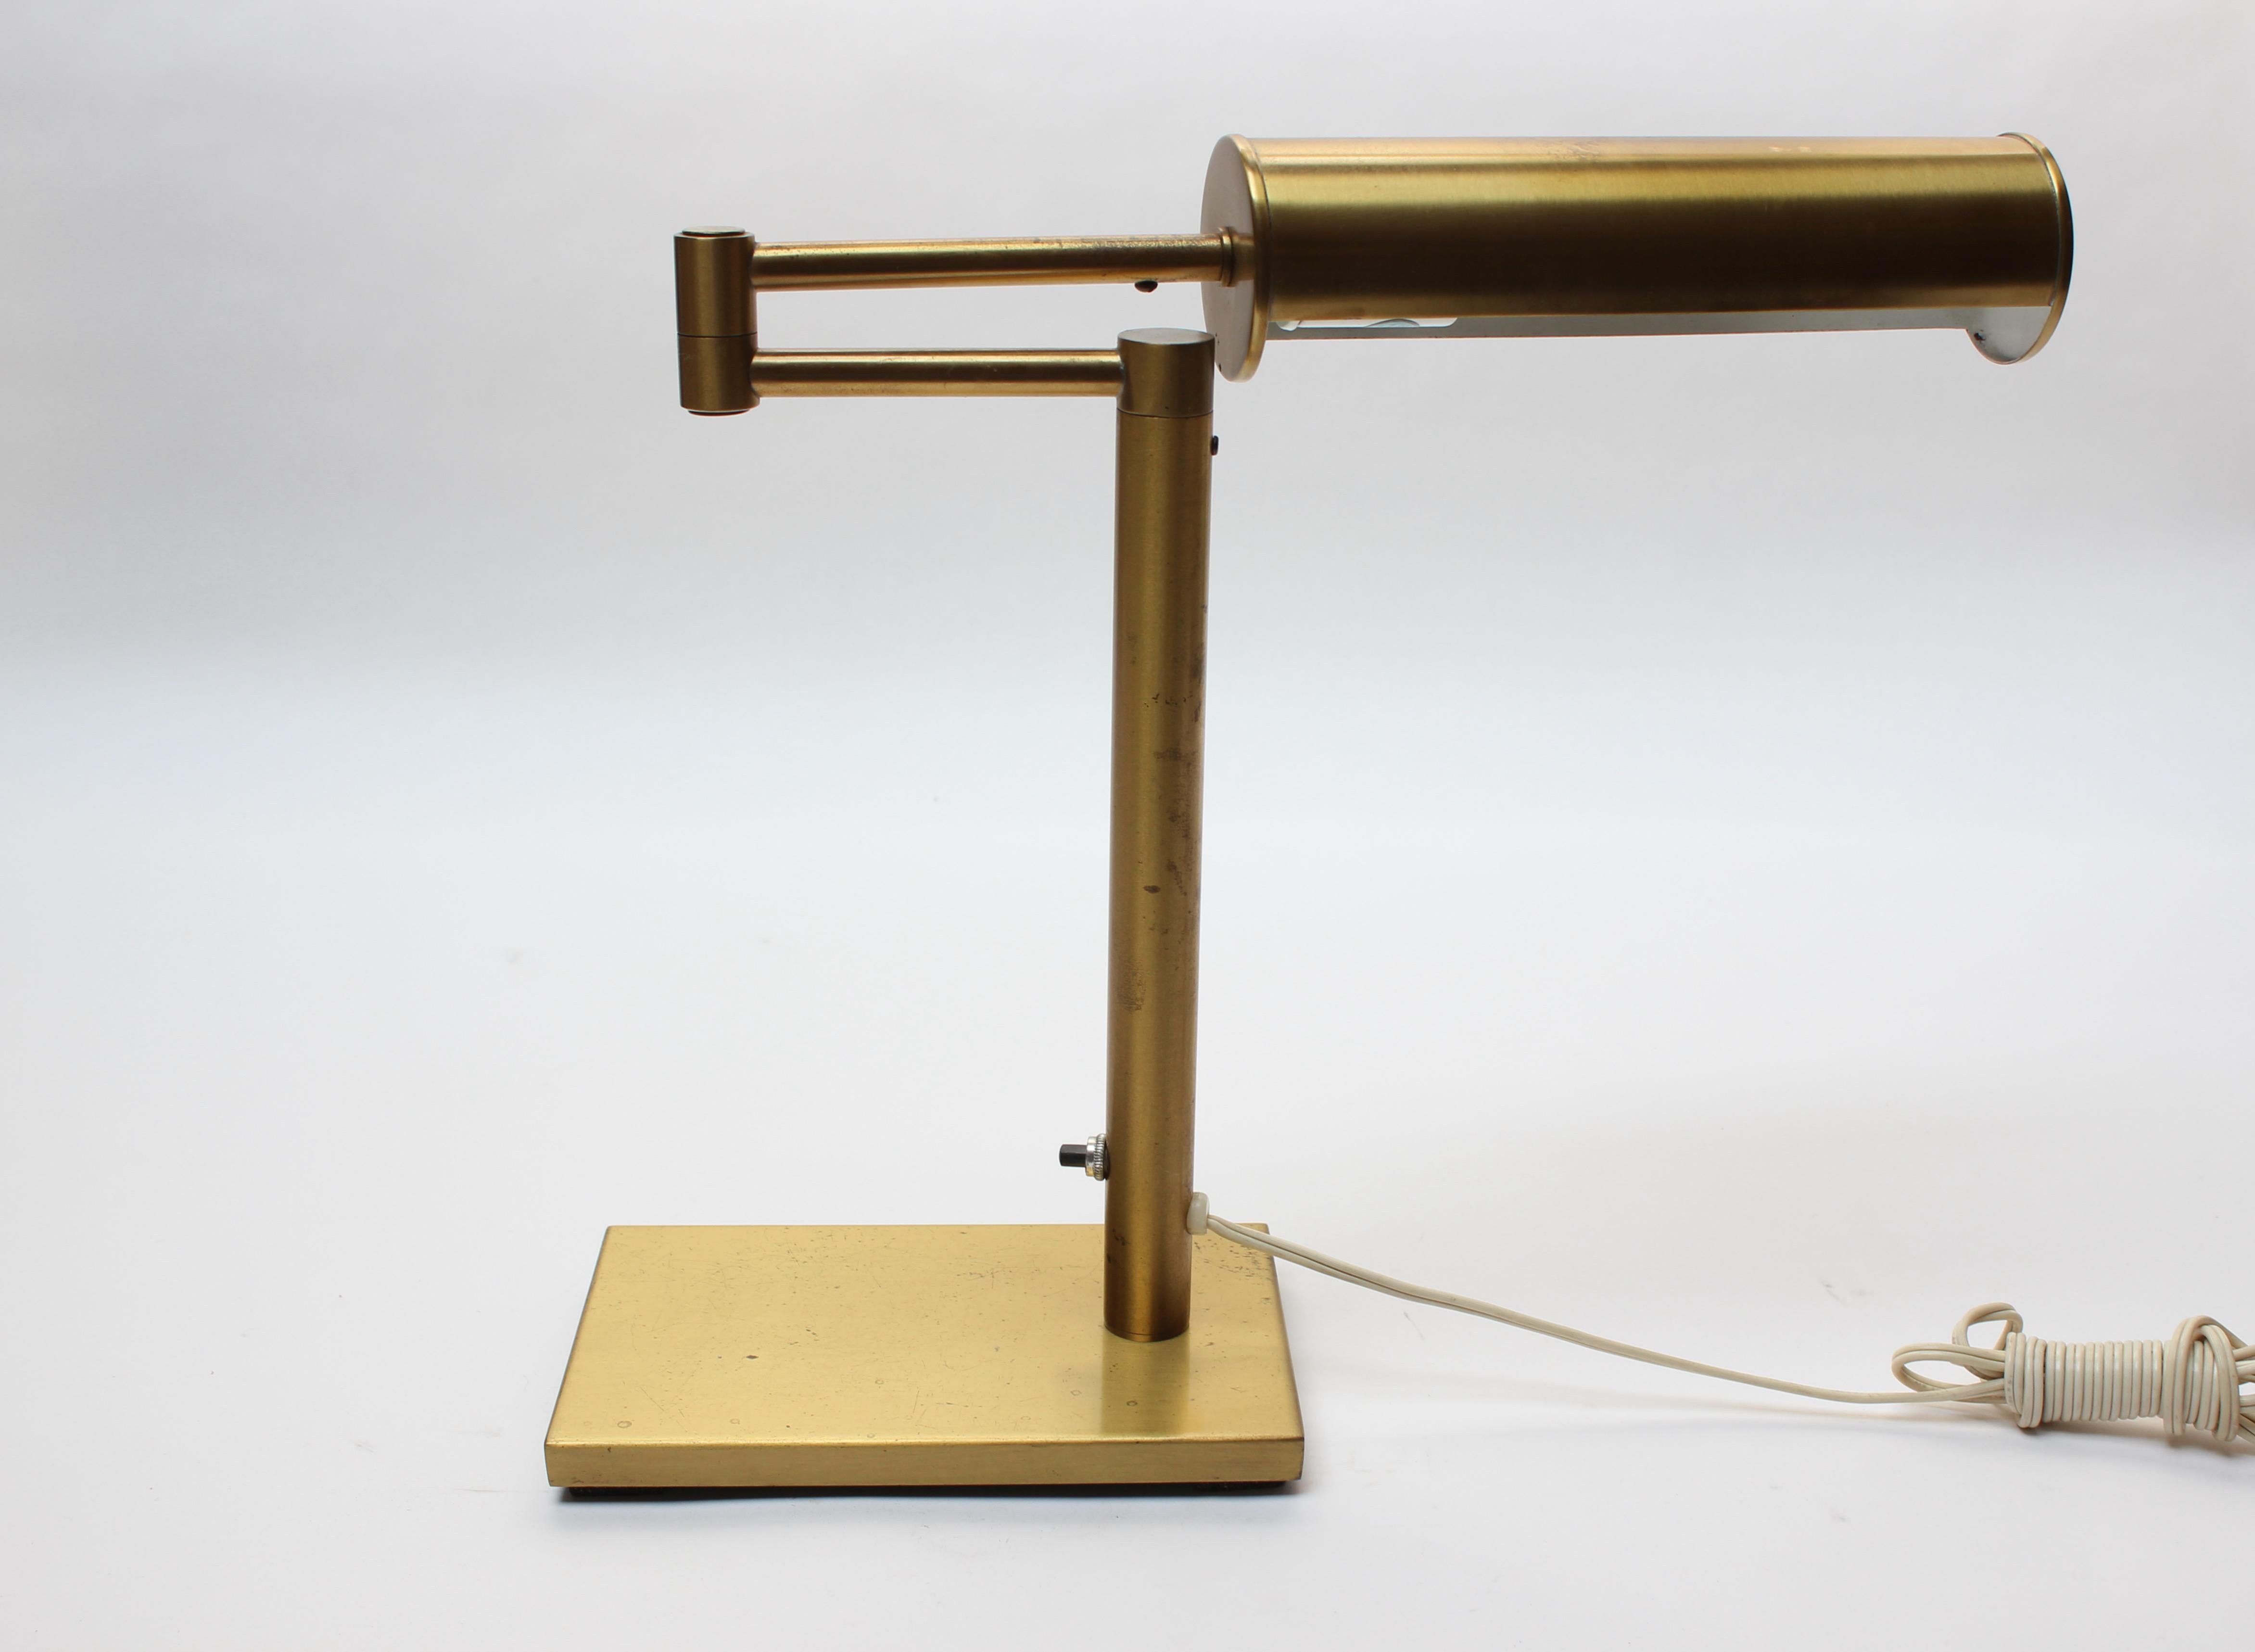 Attrayante et très fonctionnelle lampe de bureau / de table par Walter Von Nessen pour son studio éponyme Nessen Studio (ca. 1970s, New York City). Comprend un bras pivotant et un abat-jour cylindrique perforé et pivotant. 
Une patine naturelle et